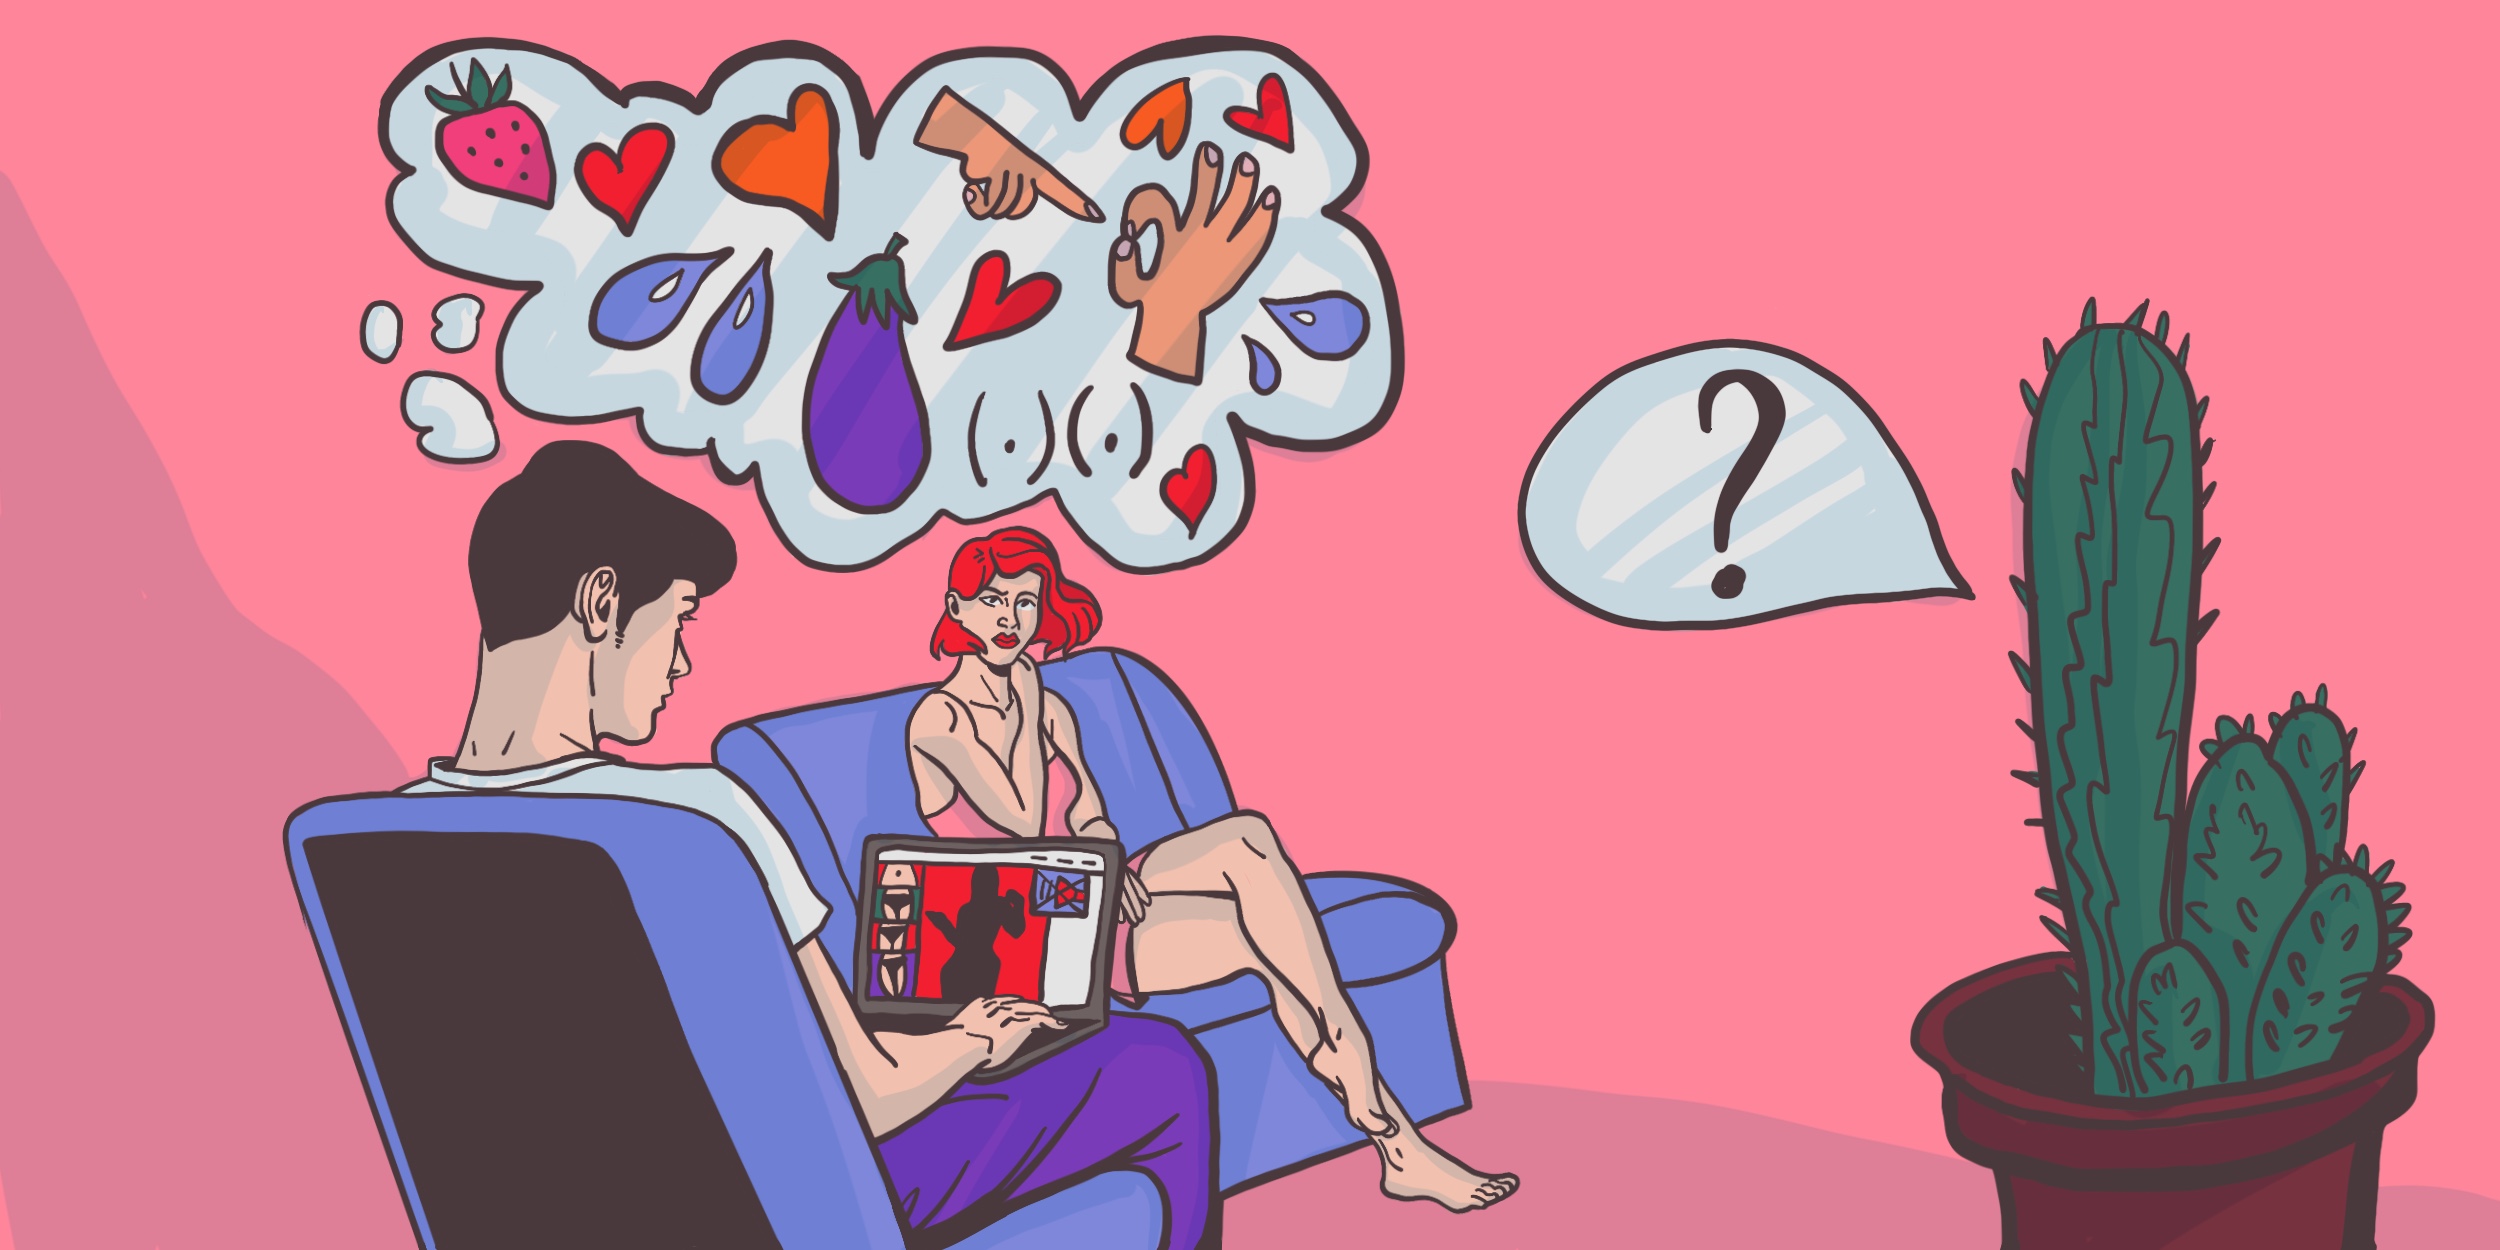 муж смотрит порно и не желает заниматься сексом